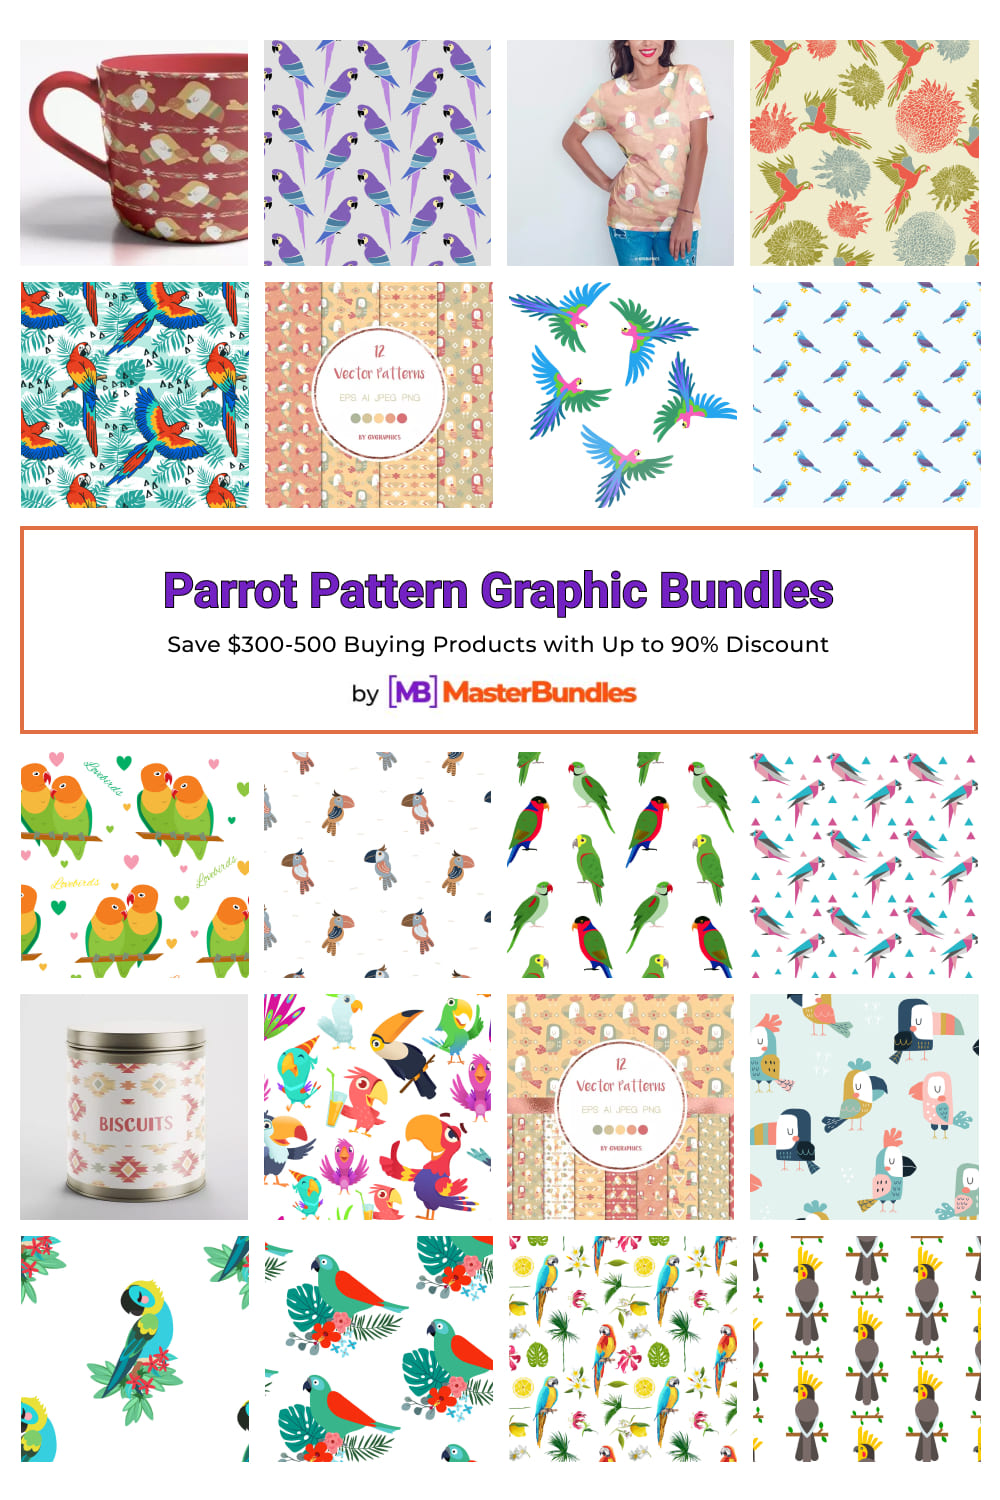 Parrot Pattern Graphic Bundles for Pinterest.